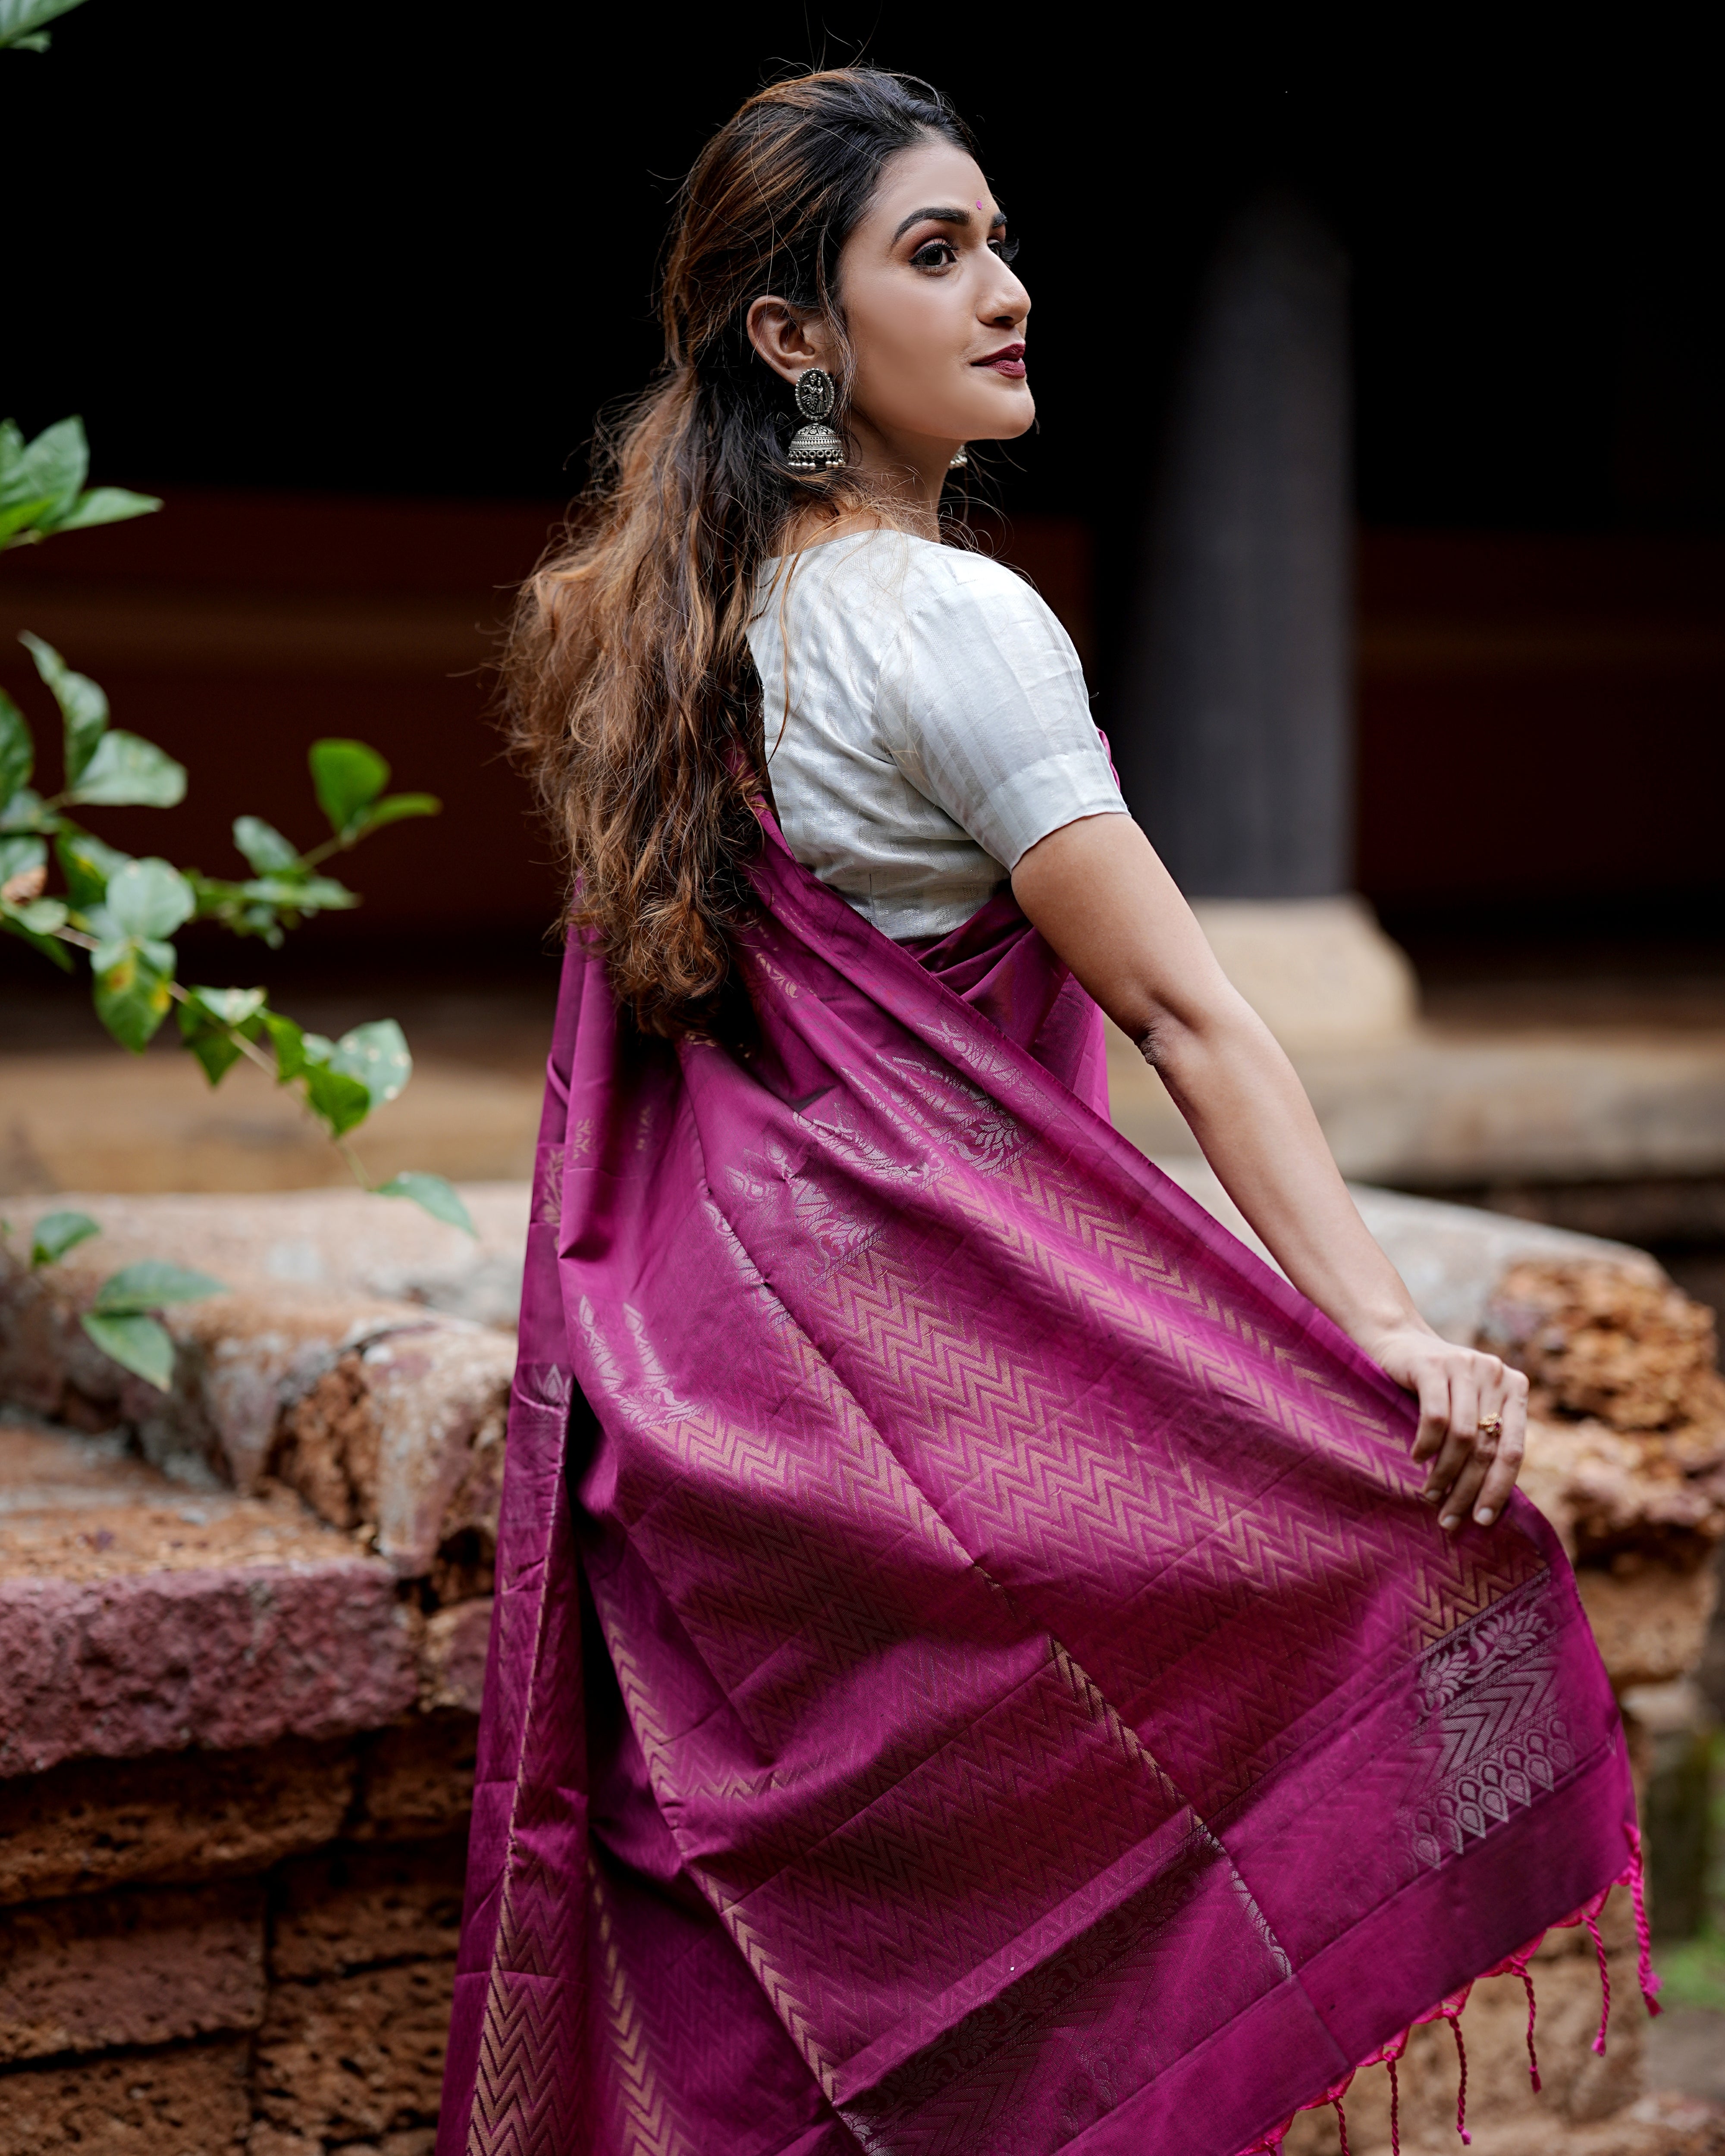 Weaving RVR VANDITA SOFT LICHI SILK SAREE, 6.3 m (with blouse piece) at Rs  500/piece in Surat